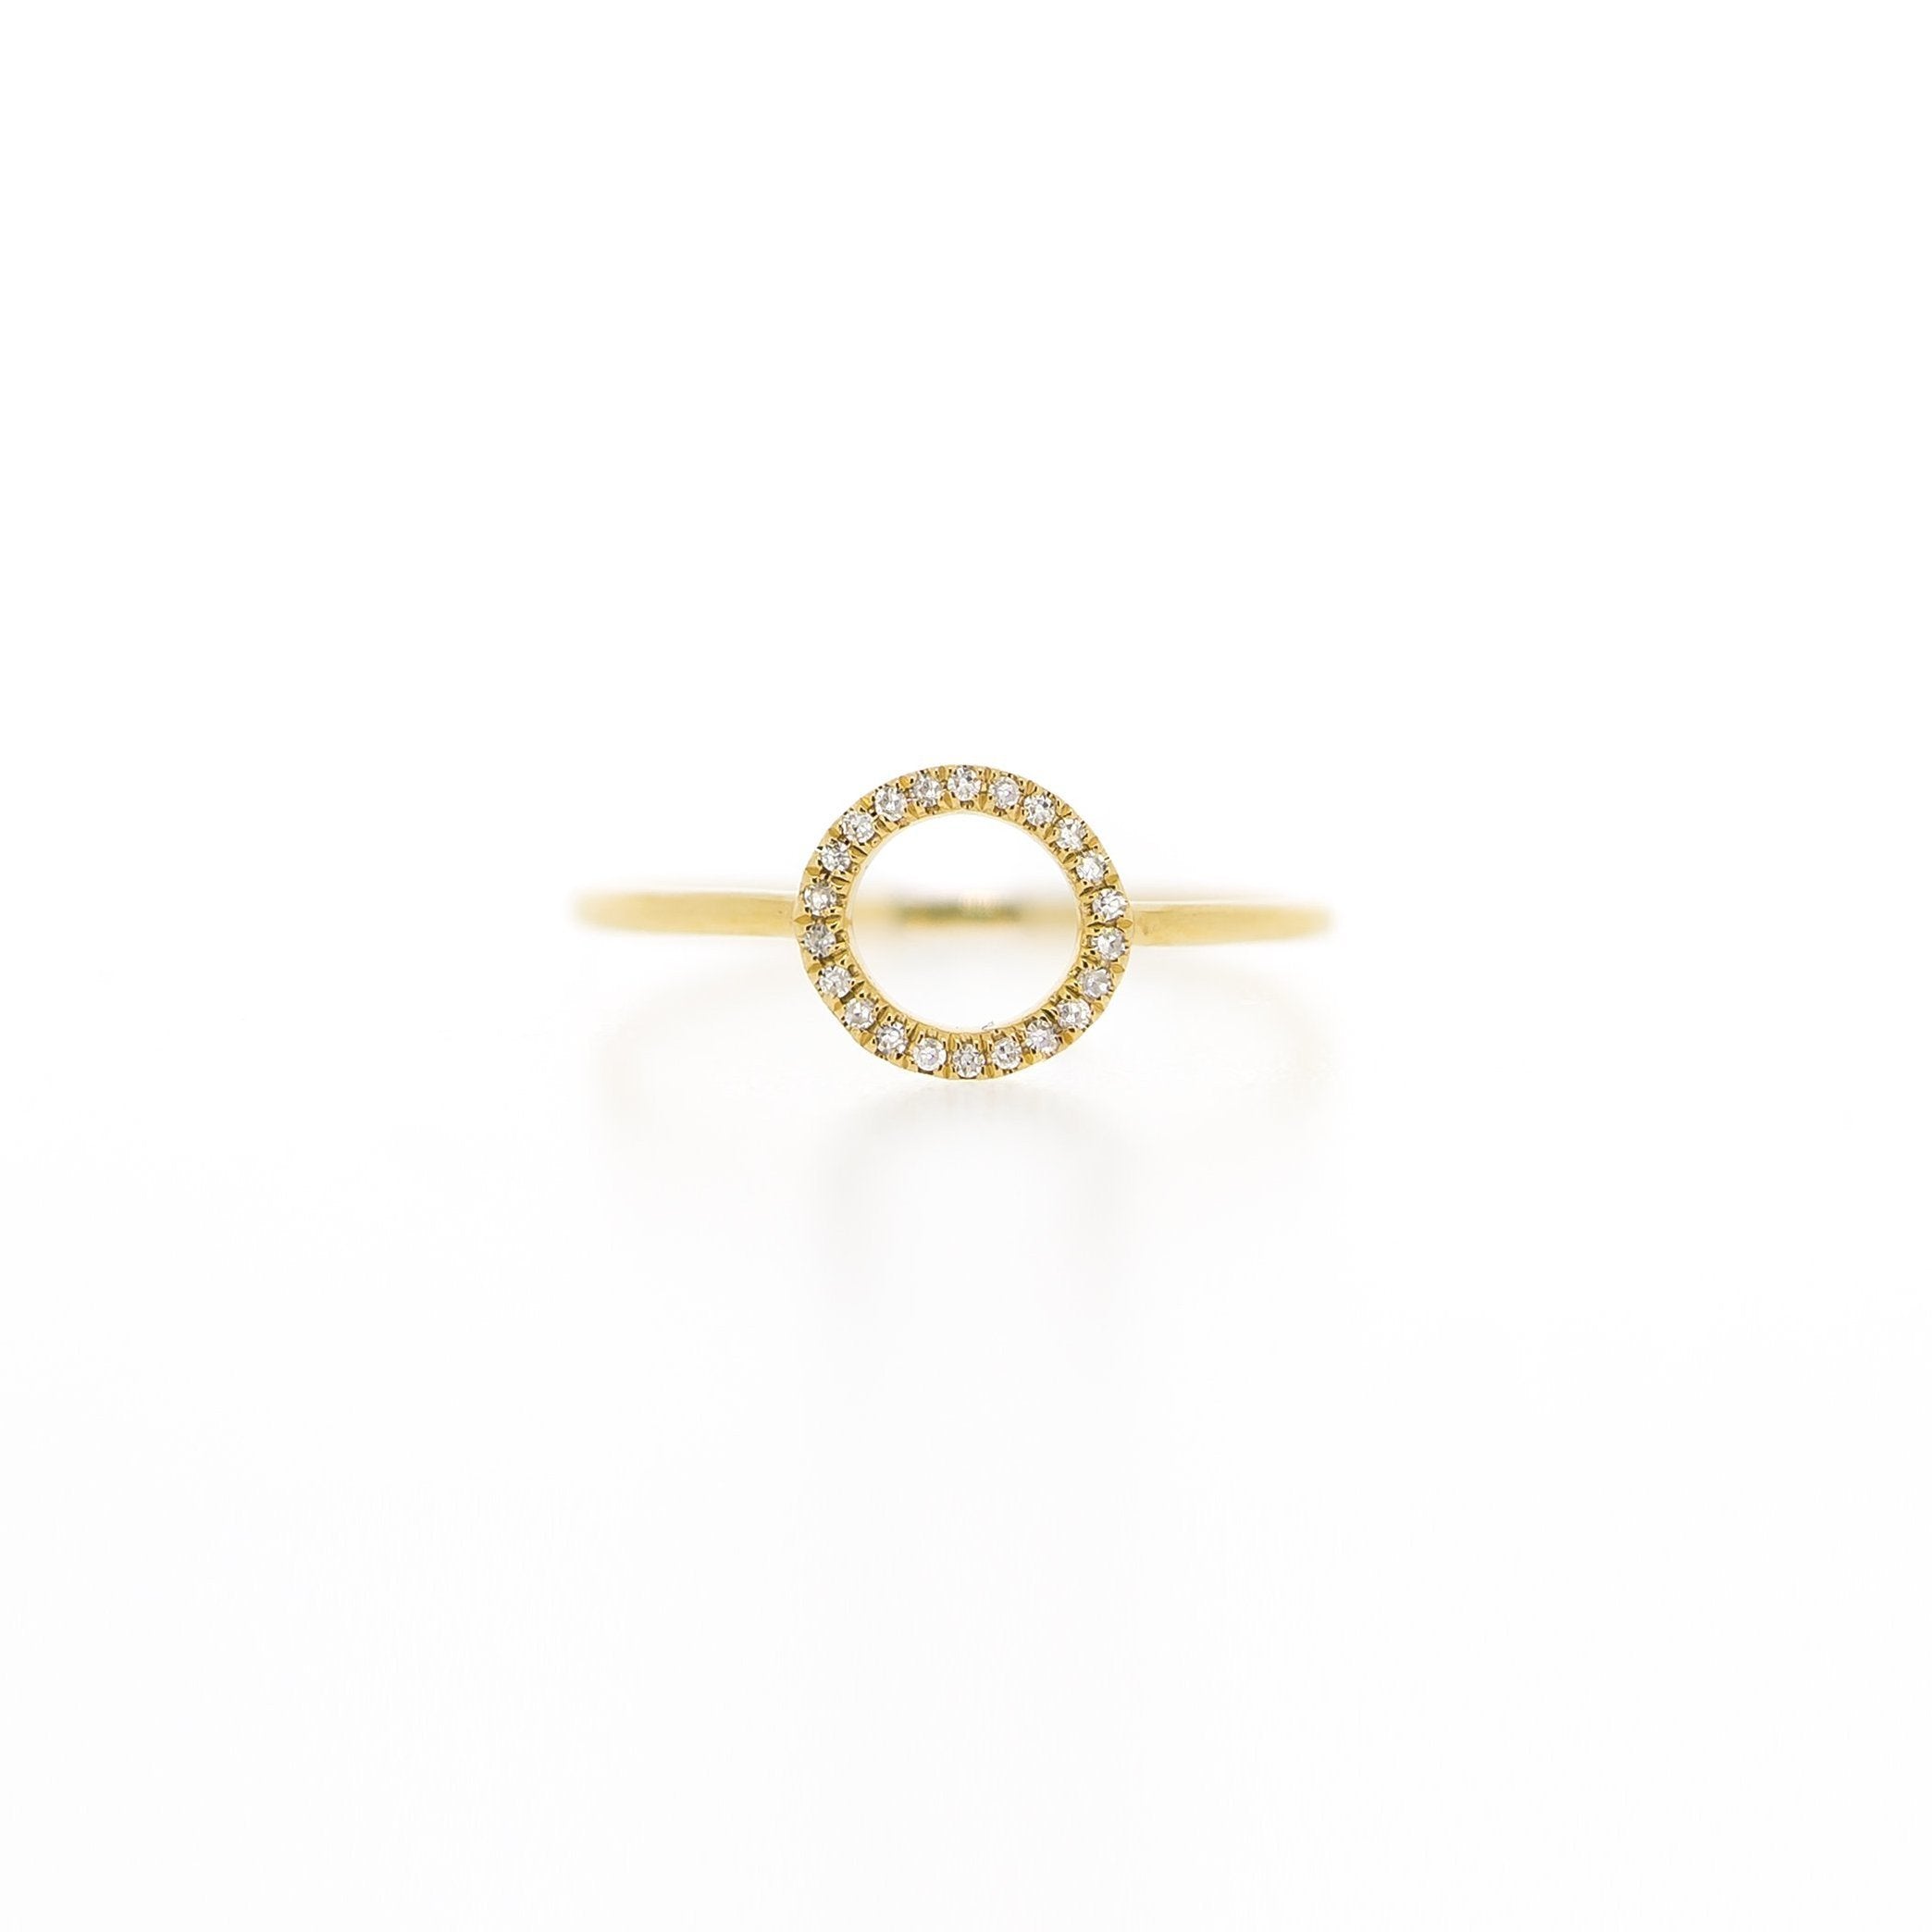 Halo Diamond Ring by Atheria Jewelry